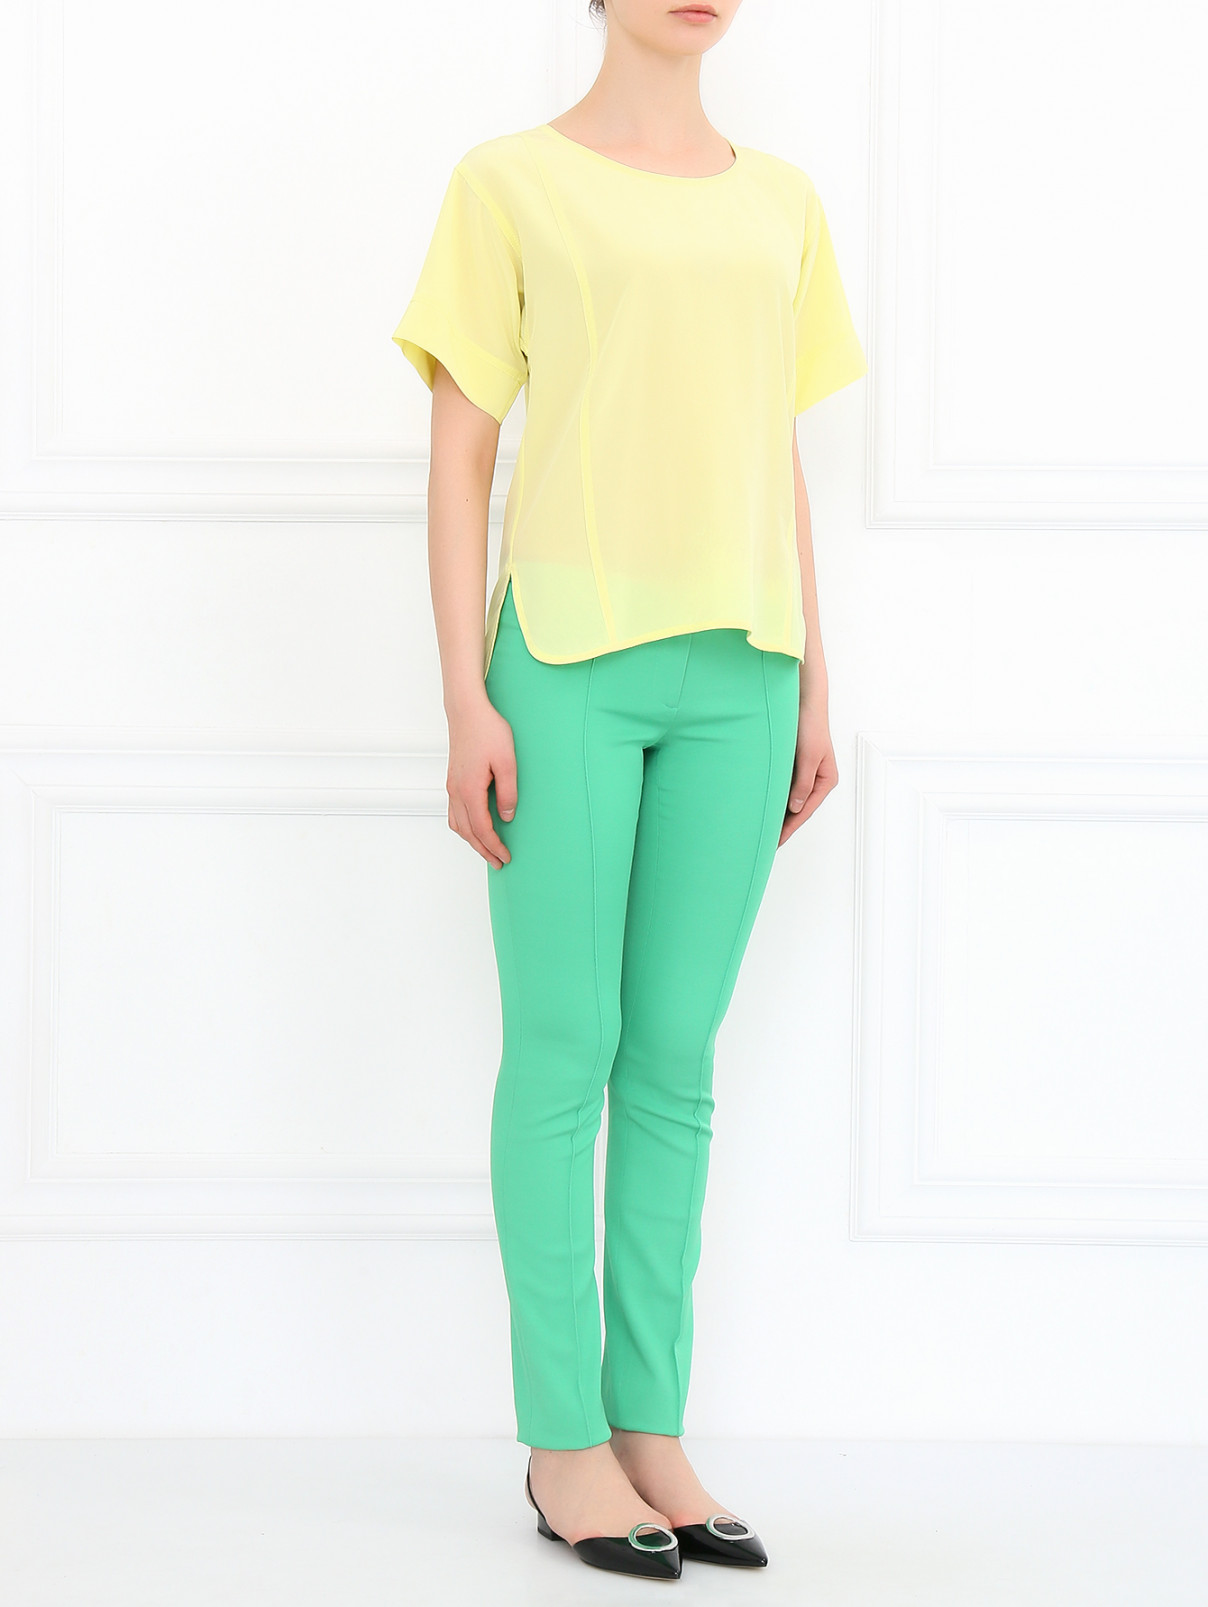 Узкие брюки со стрелками Versace Collection  –  Модель Общий вид  – Цвет:  Зеленый